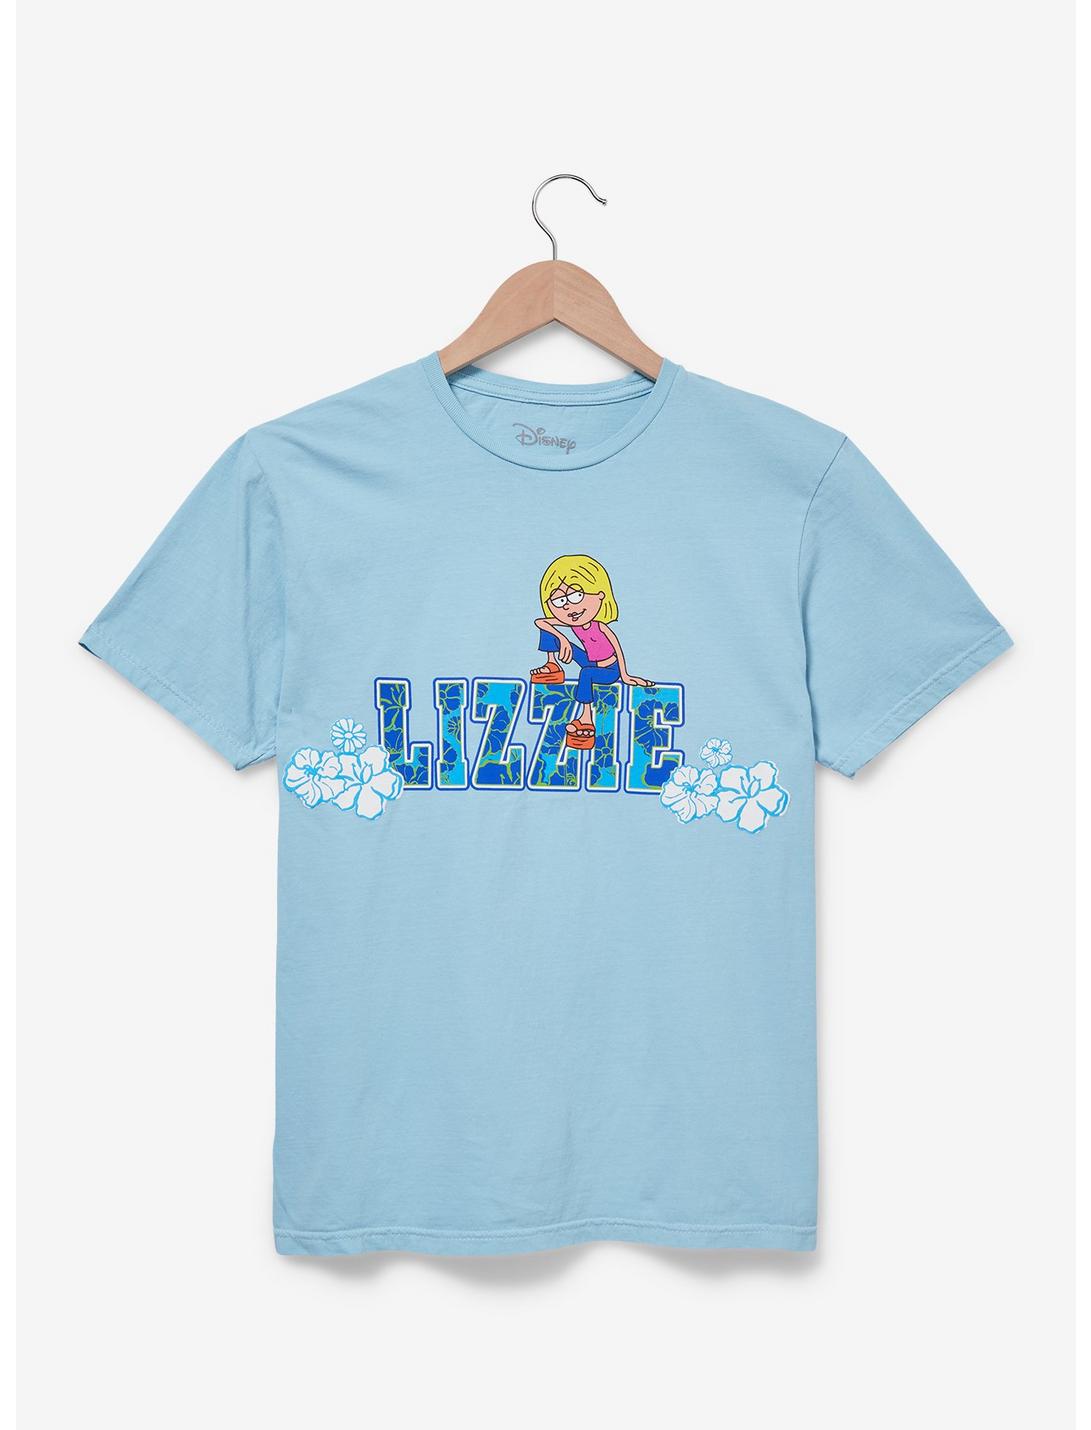 Disney Lizzie McGuire Floral Portrait Women's T-Shirt - BoxLunch Exclusive, LIGHT BLUE, hi-res